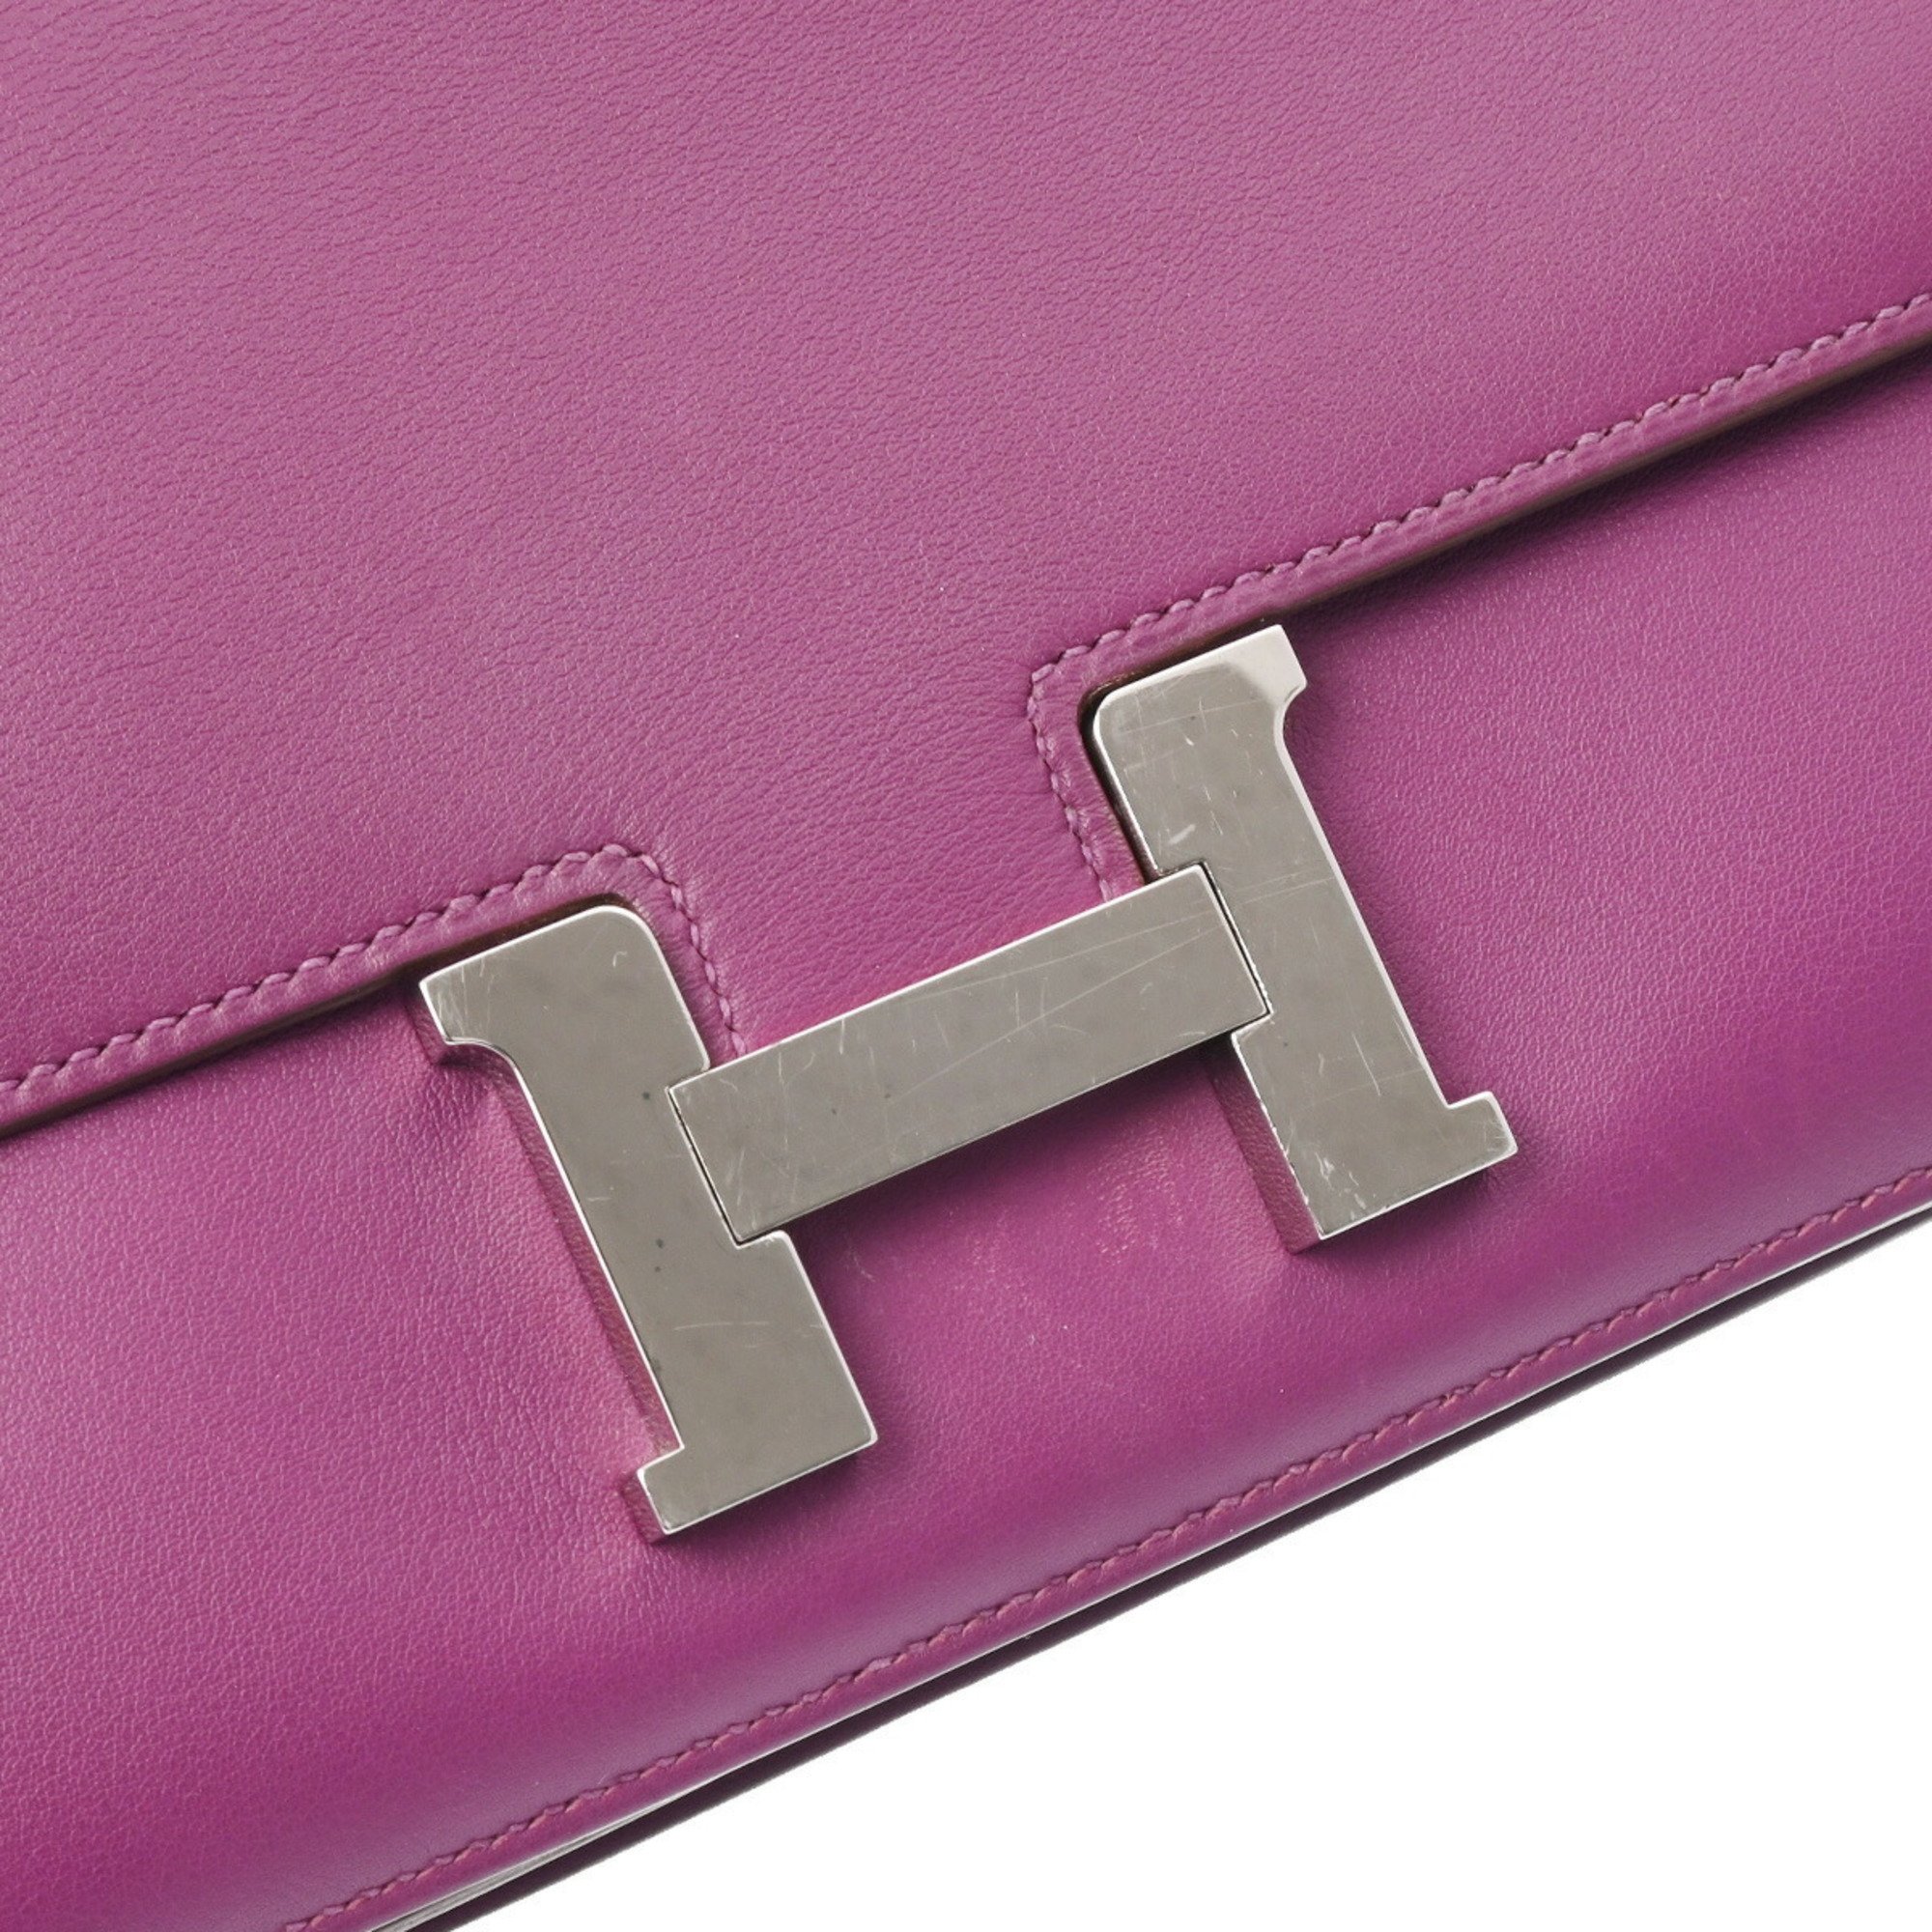 HERMES Constance Elan Anemone Palladium hardware R stamp (around 2014) Women's Swift shoulder bag